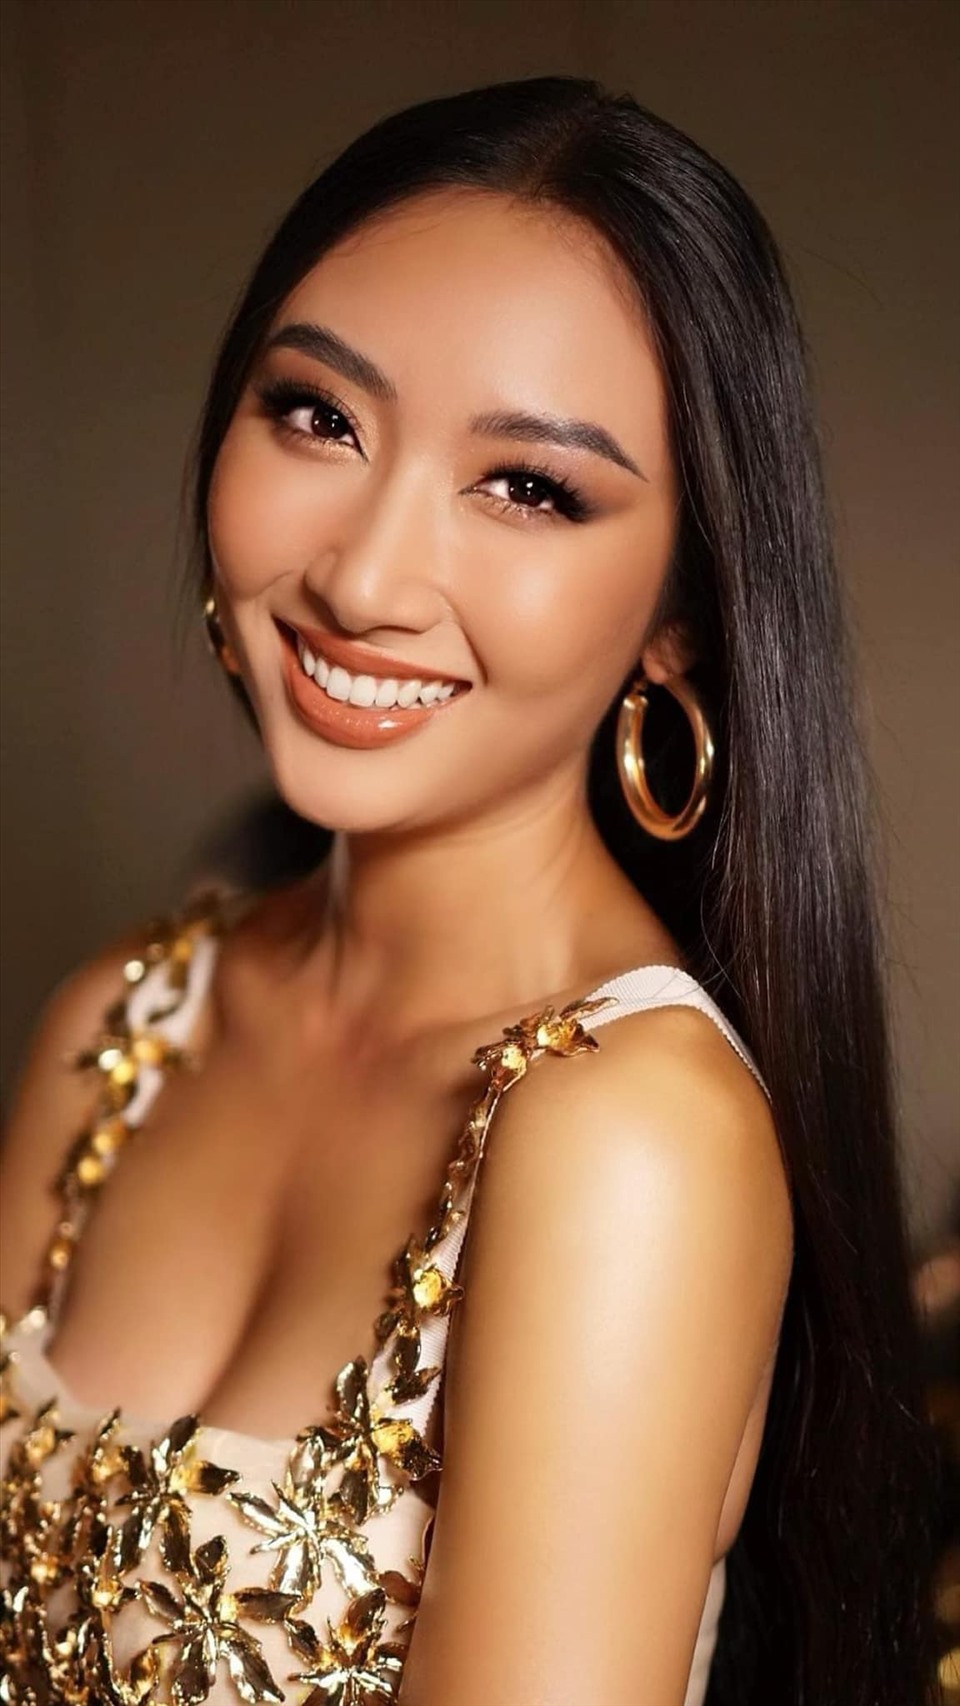 Cuộc thi Hoa hậu Hoàn vũ Việt Nam 2022 đang nhận được sự quan tâm của người hâm mộ khi xuất hiện dàn thí sinh tiềm năng. Trong đó, Nguyễn Thị Thanh Khoa (sinh năm 1994) được đánh giá cao bởi nhan sắc đậm chất Á đông, chiều cao 1,77m, số đo ba vòng 82-64-92 NVCC